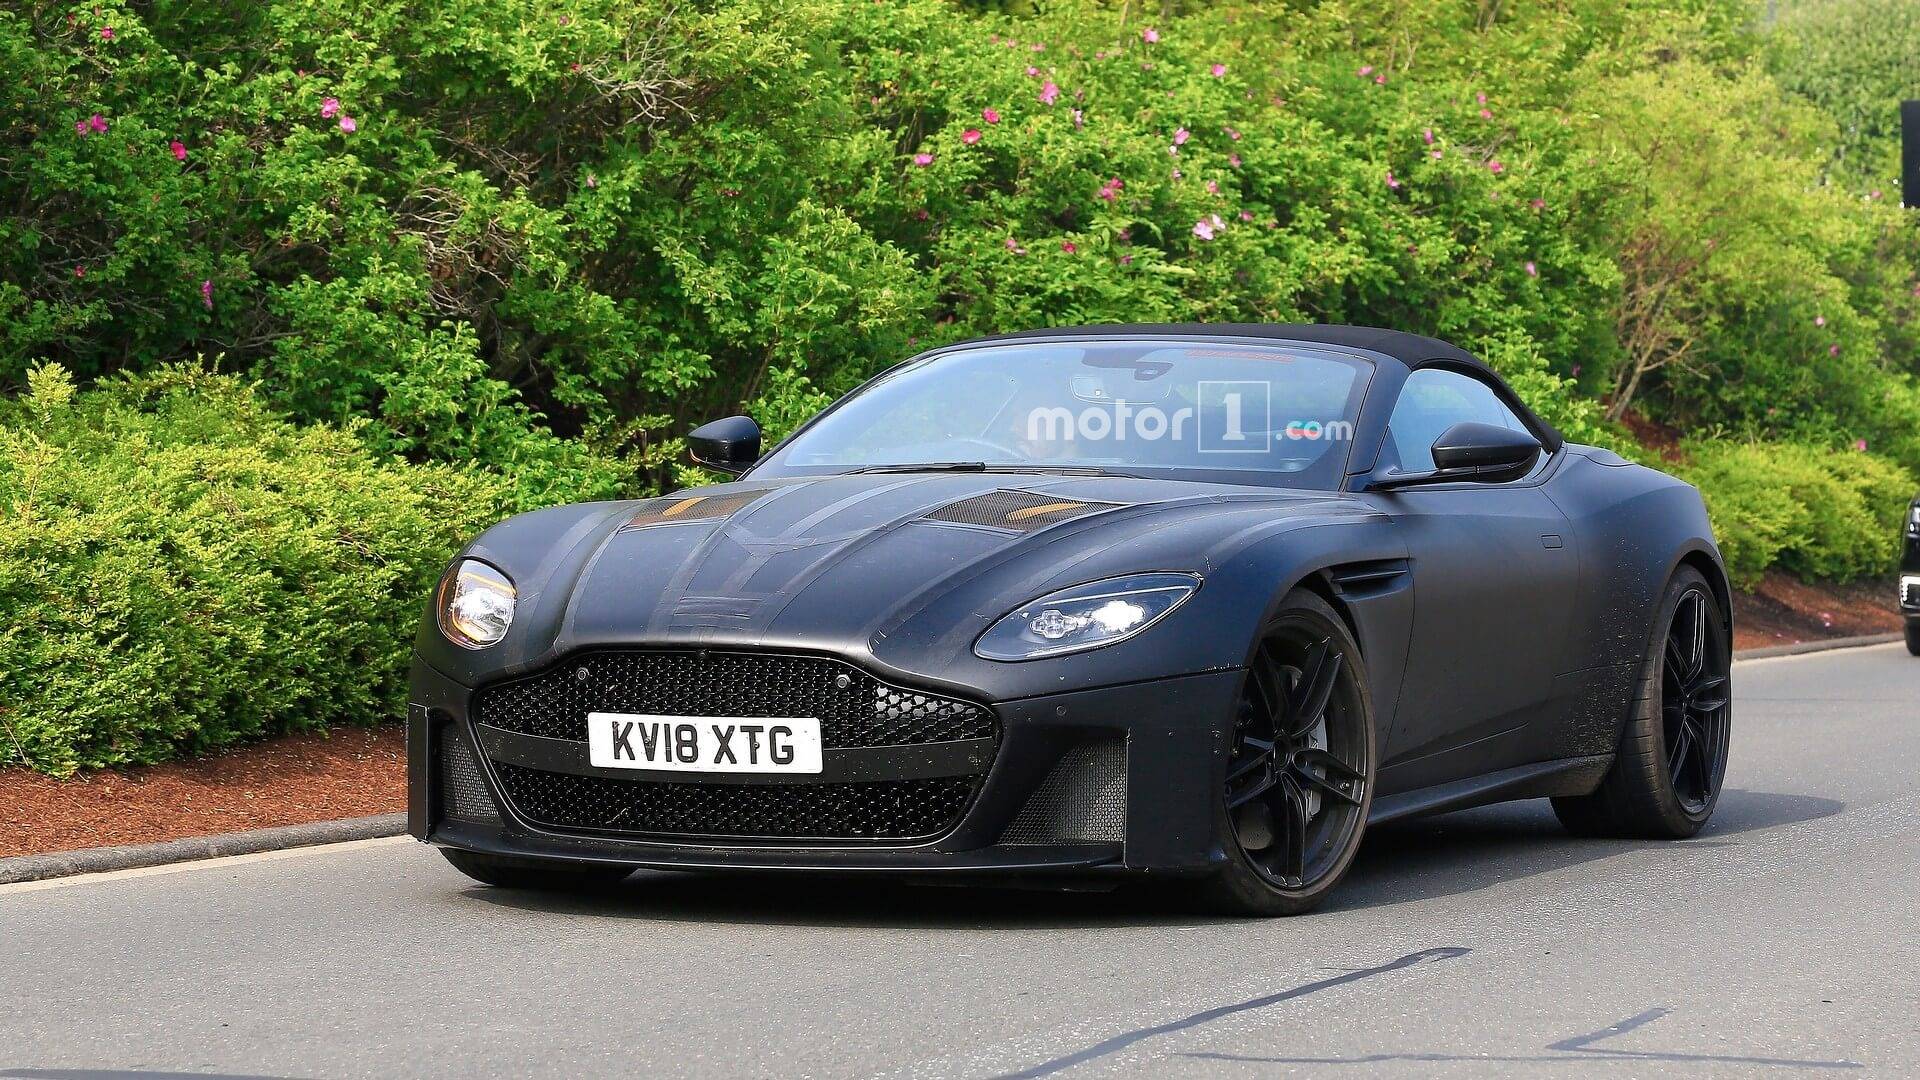 Aston Martin DBS Superleggera Volante Gets Spied in New Shots